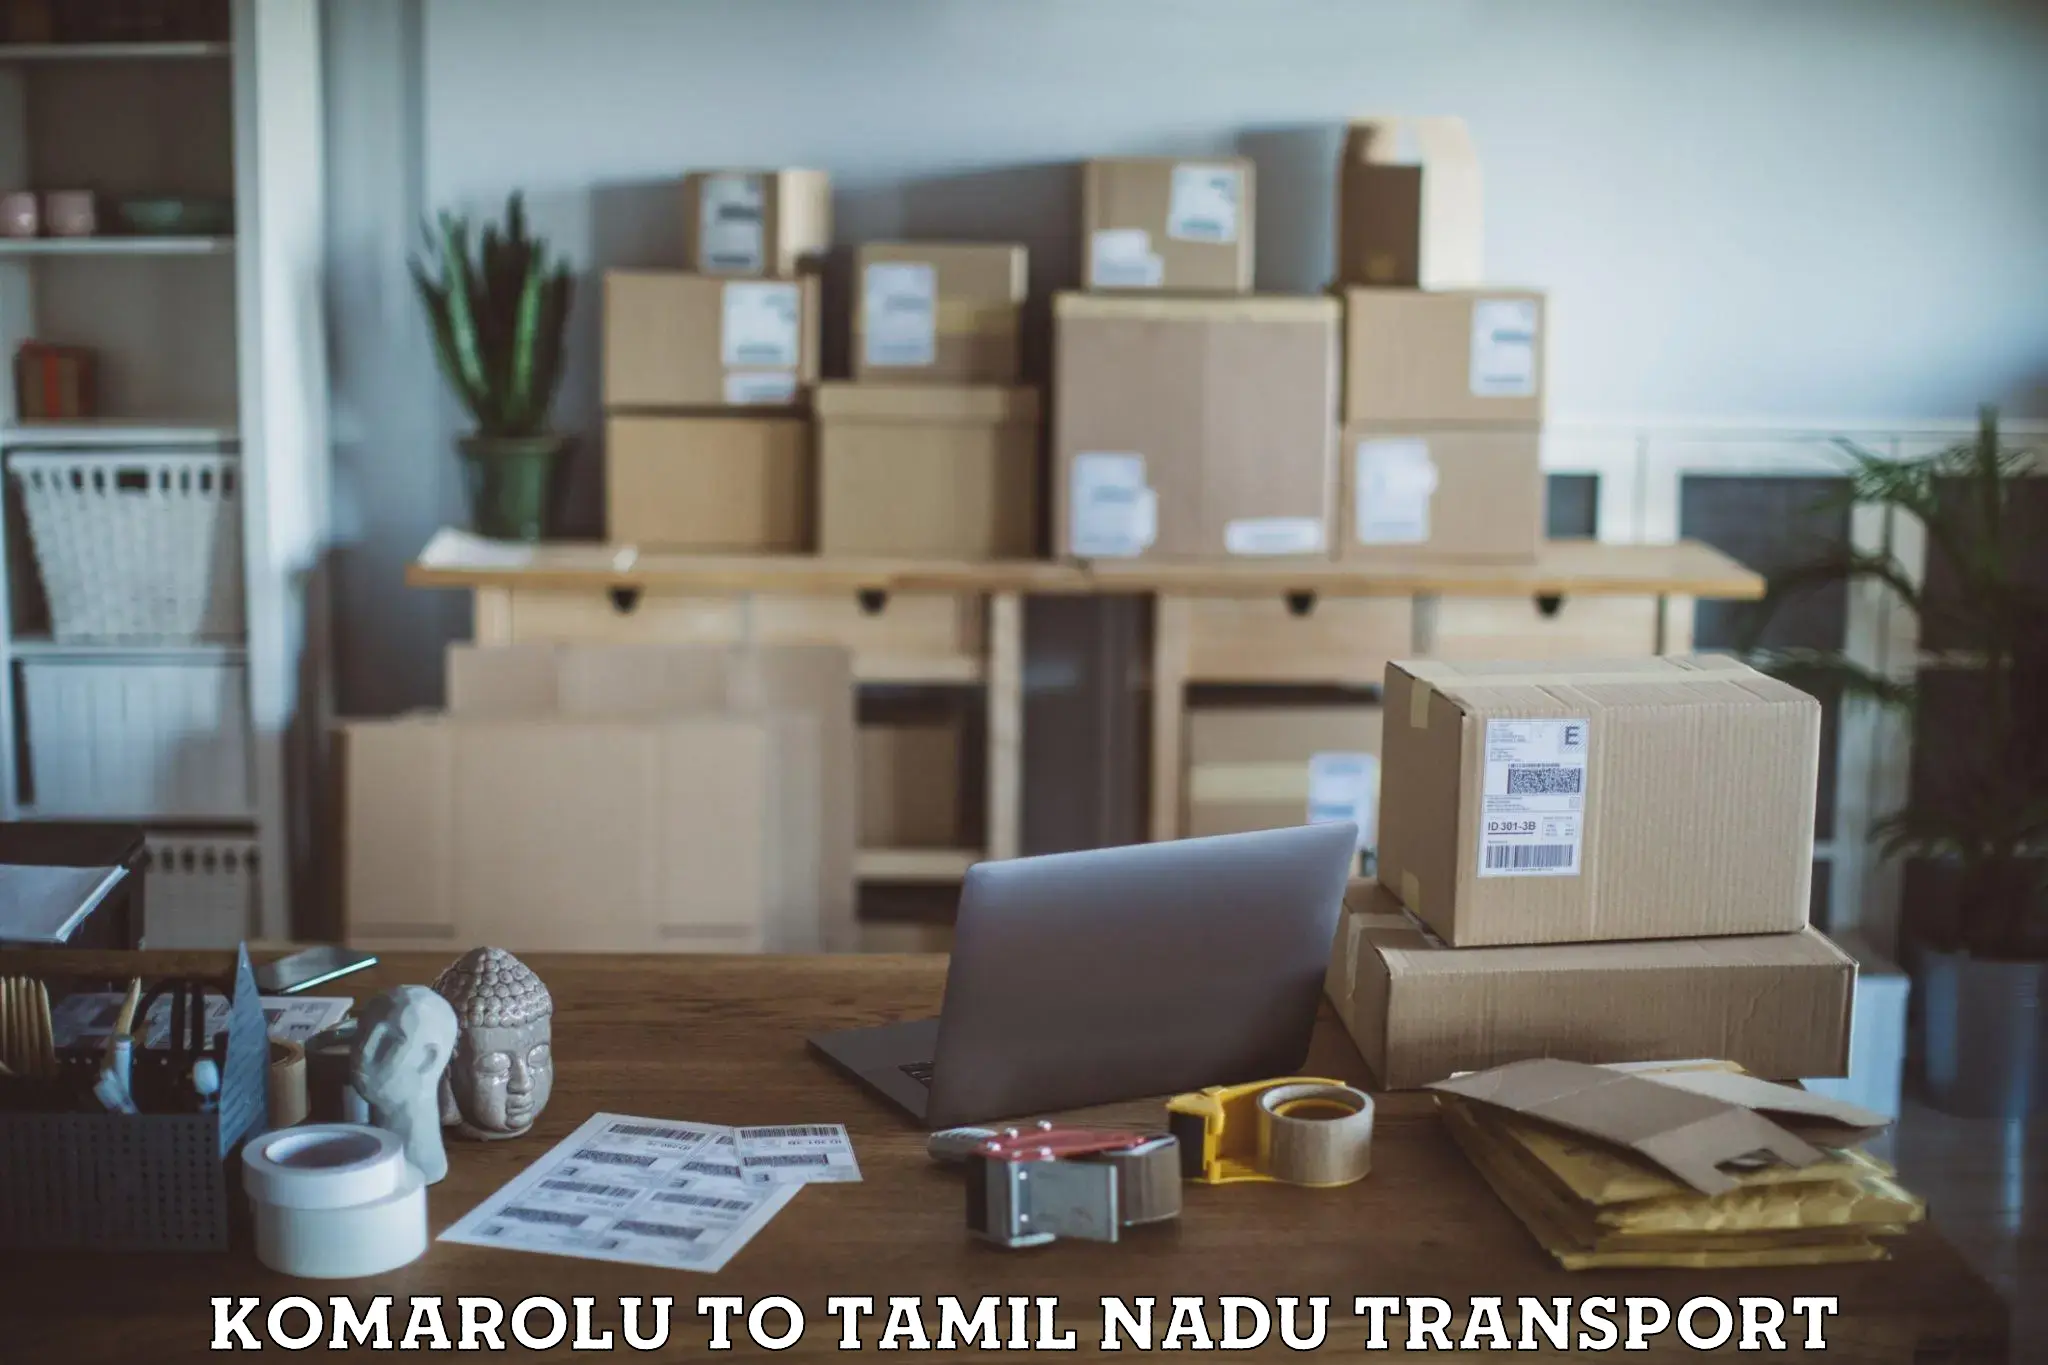 Part load transport service in India Komarolu to Tamil Nadu